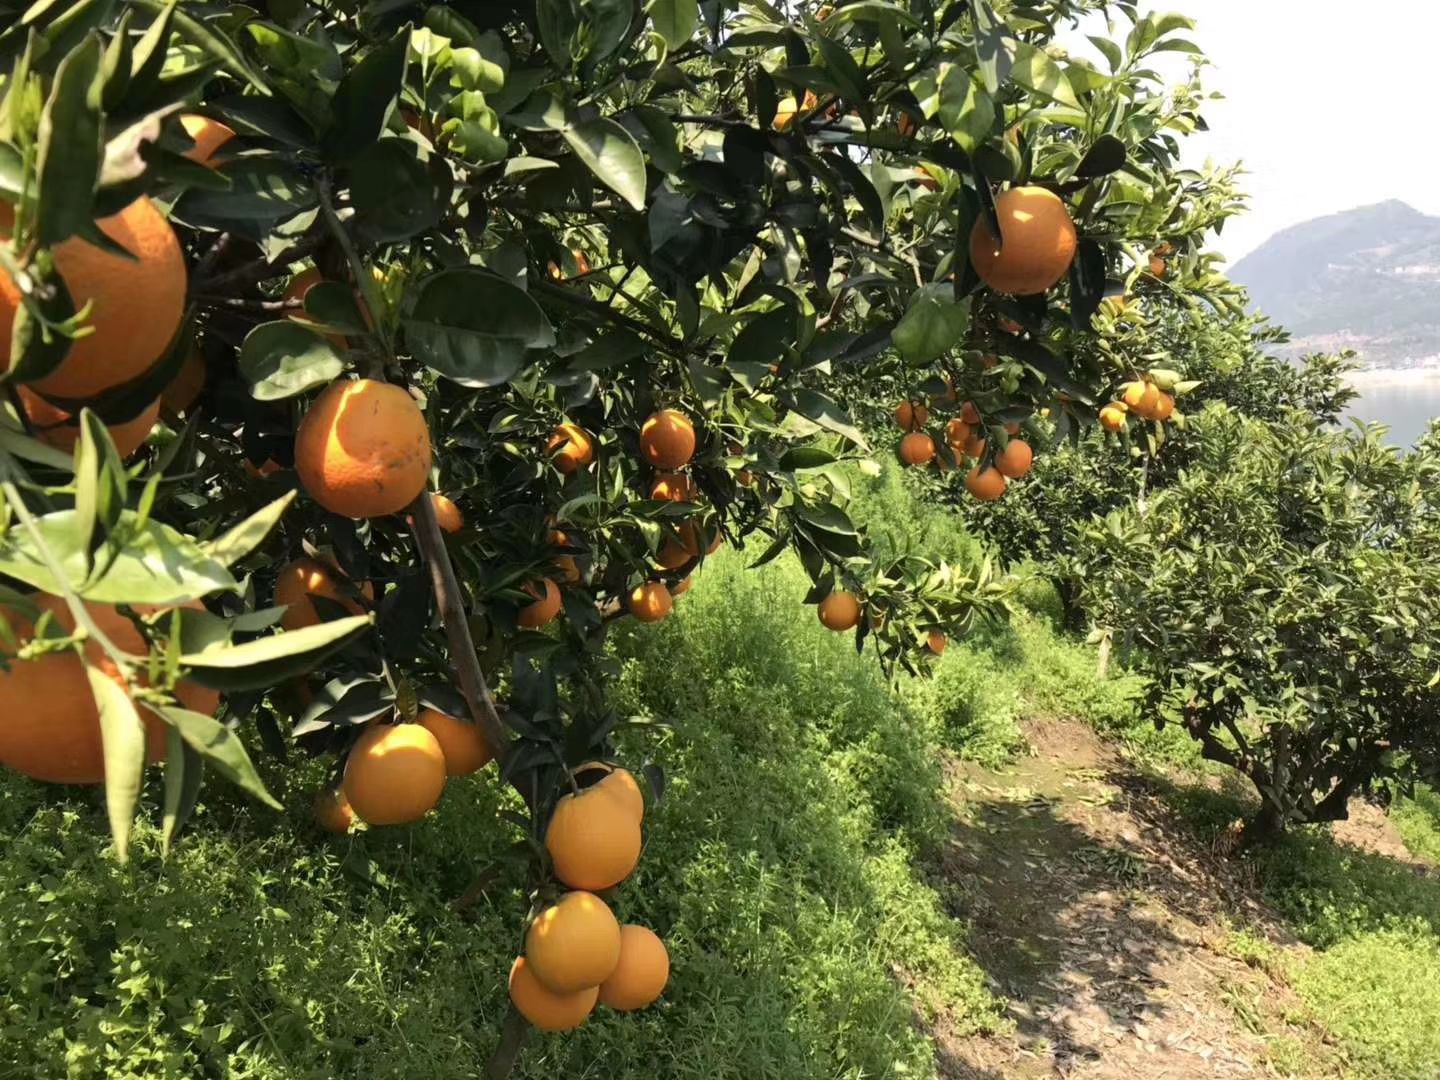 我是农村橙子种植户,欢迎各位老板来批发,量大有货,没有中间商